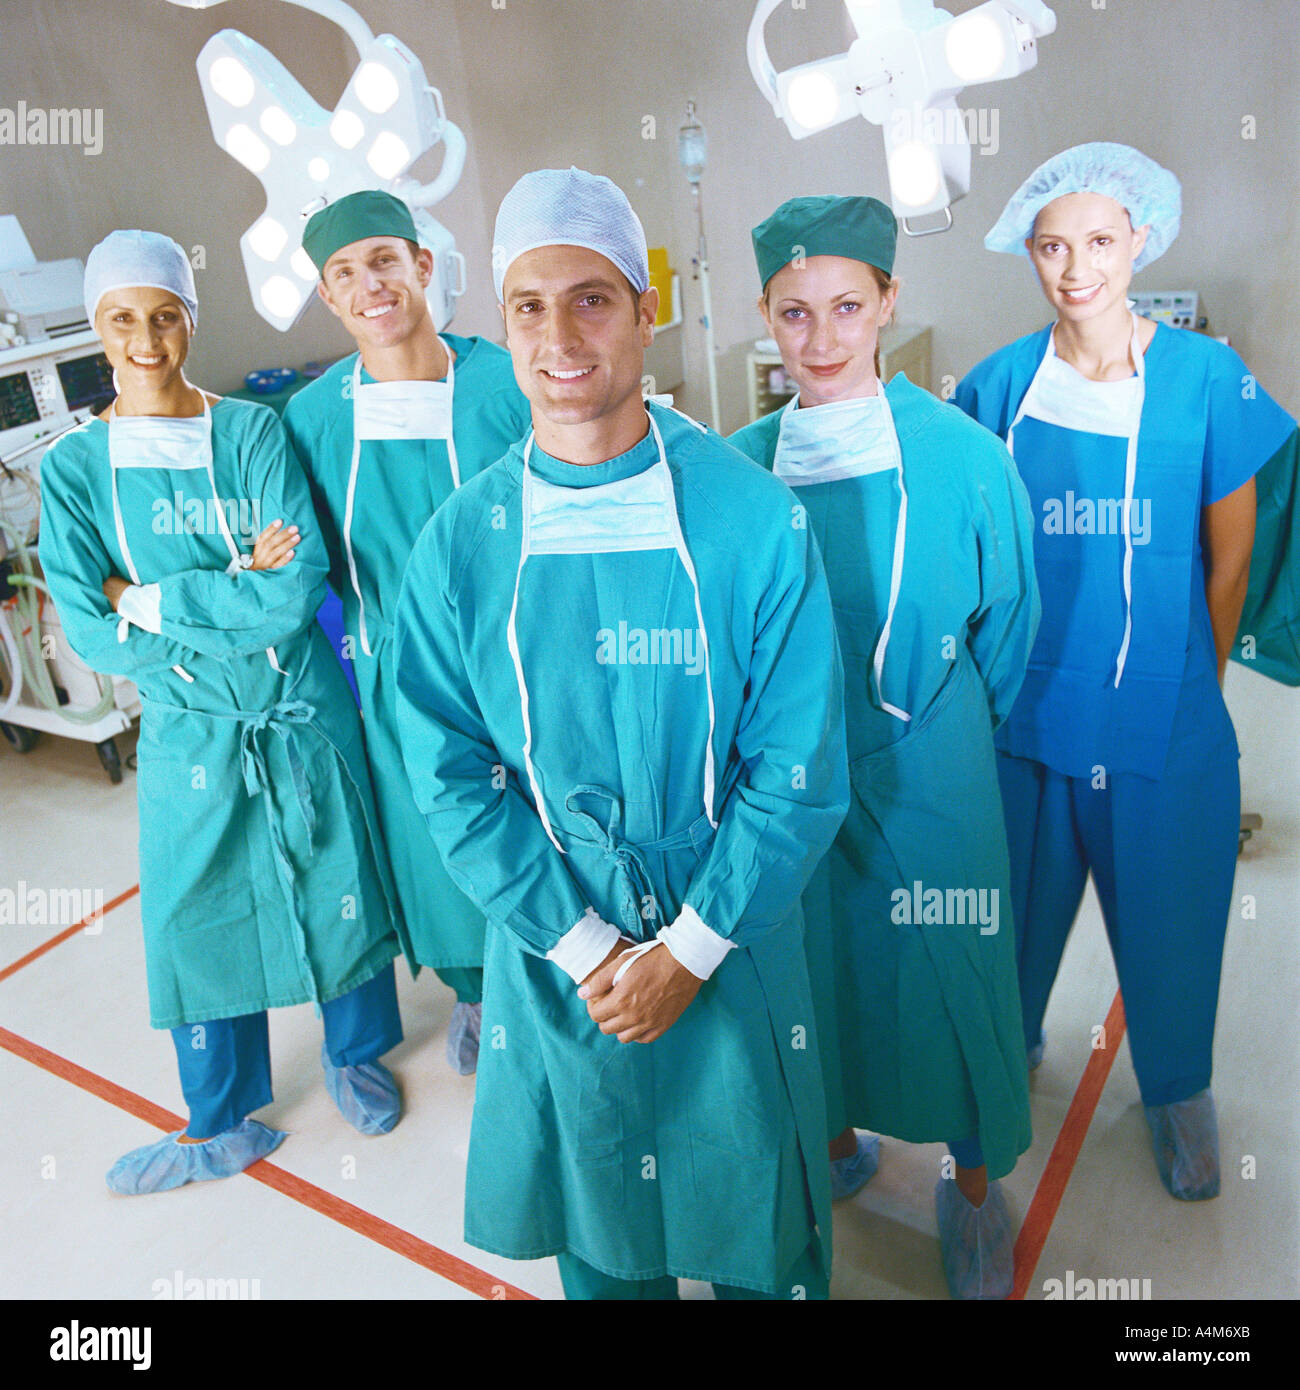 L'équipe chirurgicale smiling, portrait Banque D'Images